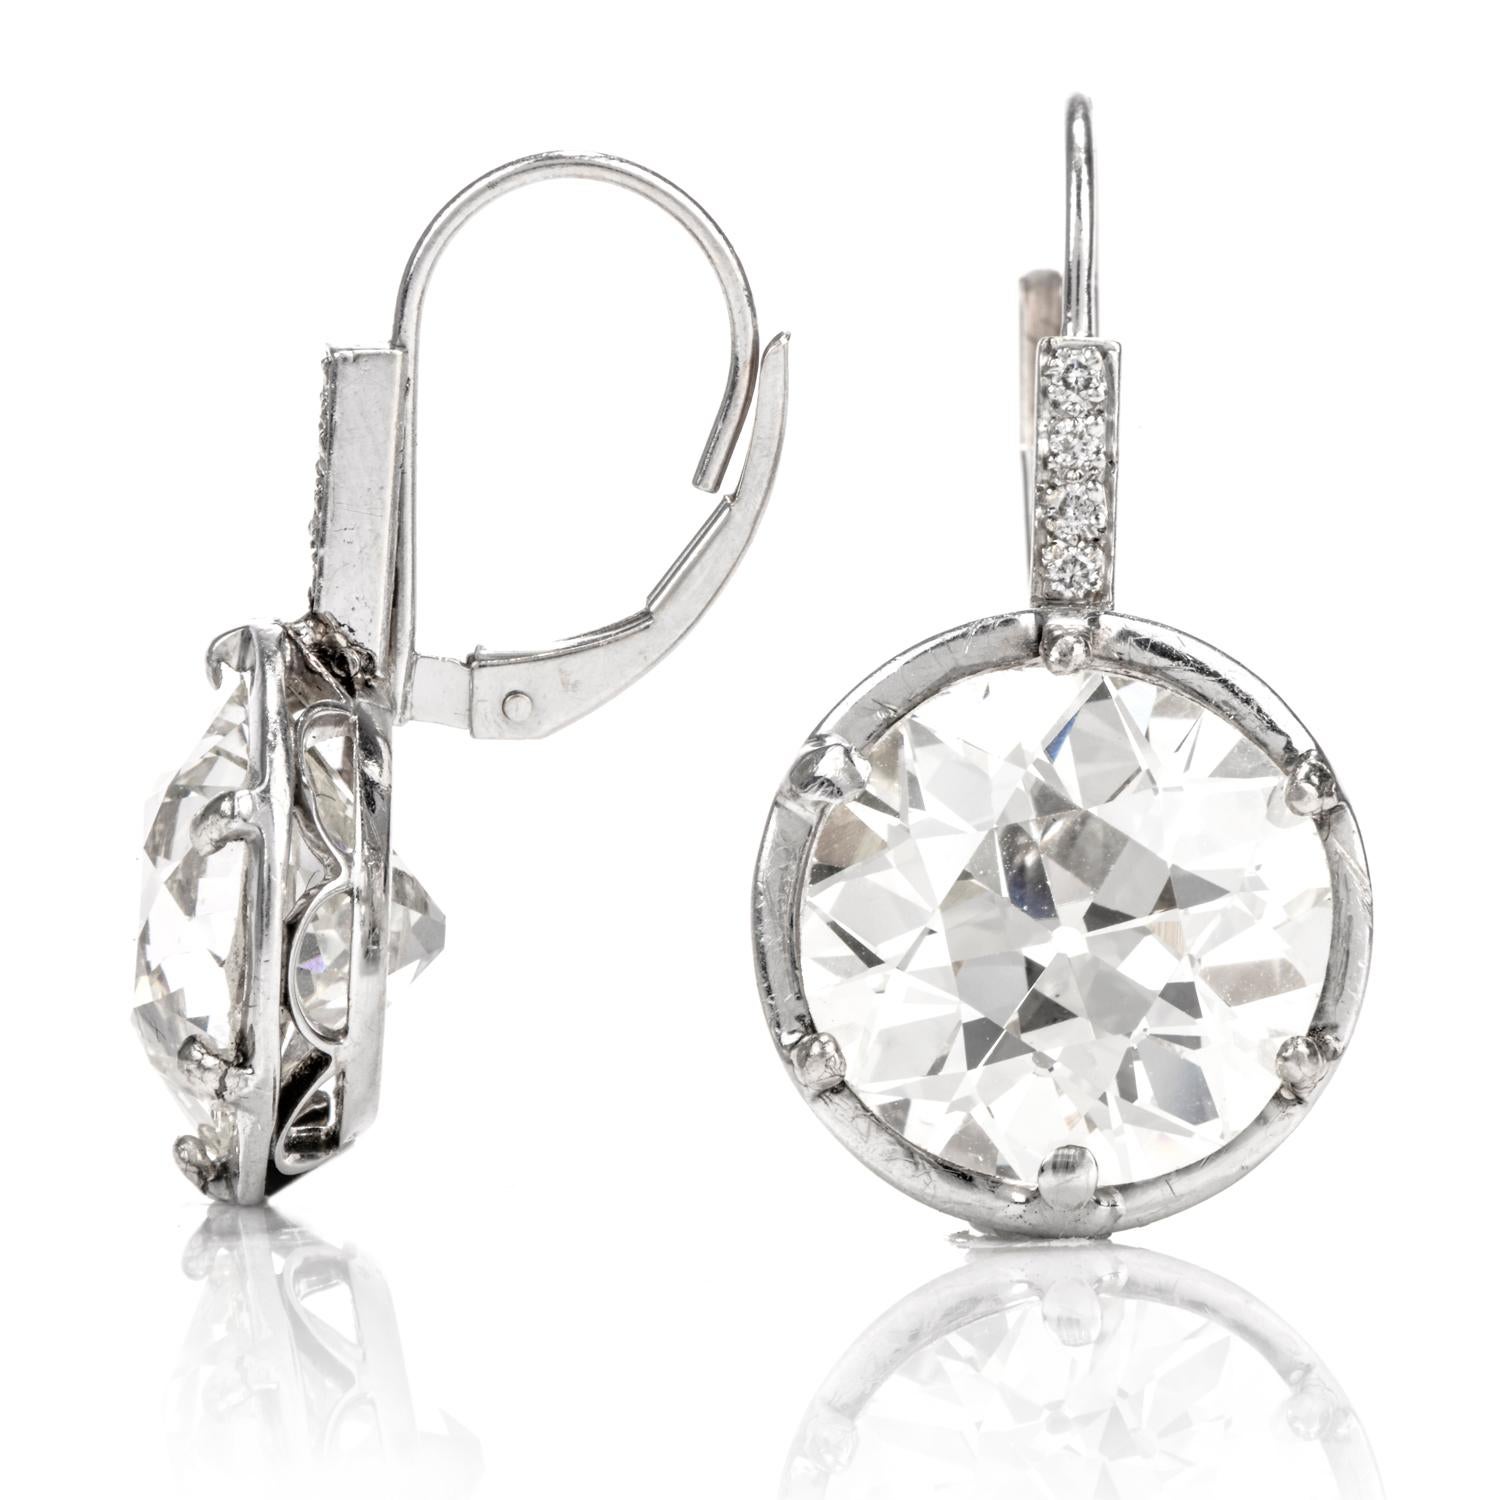 european cut diamond earrings